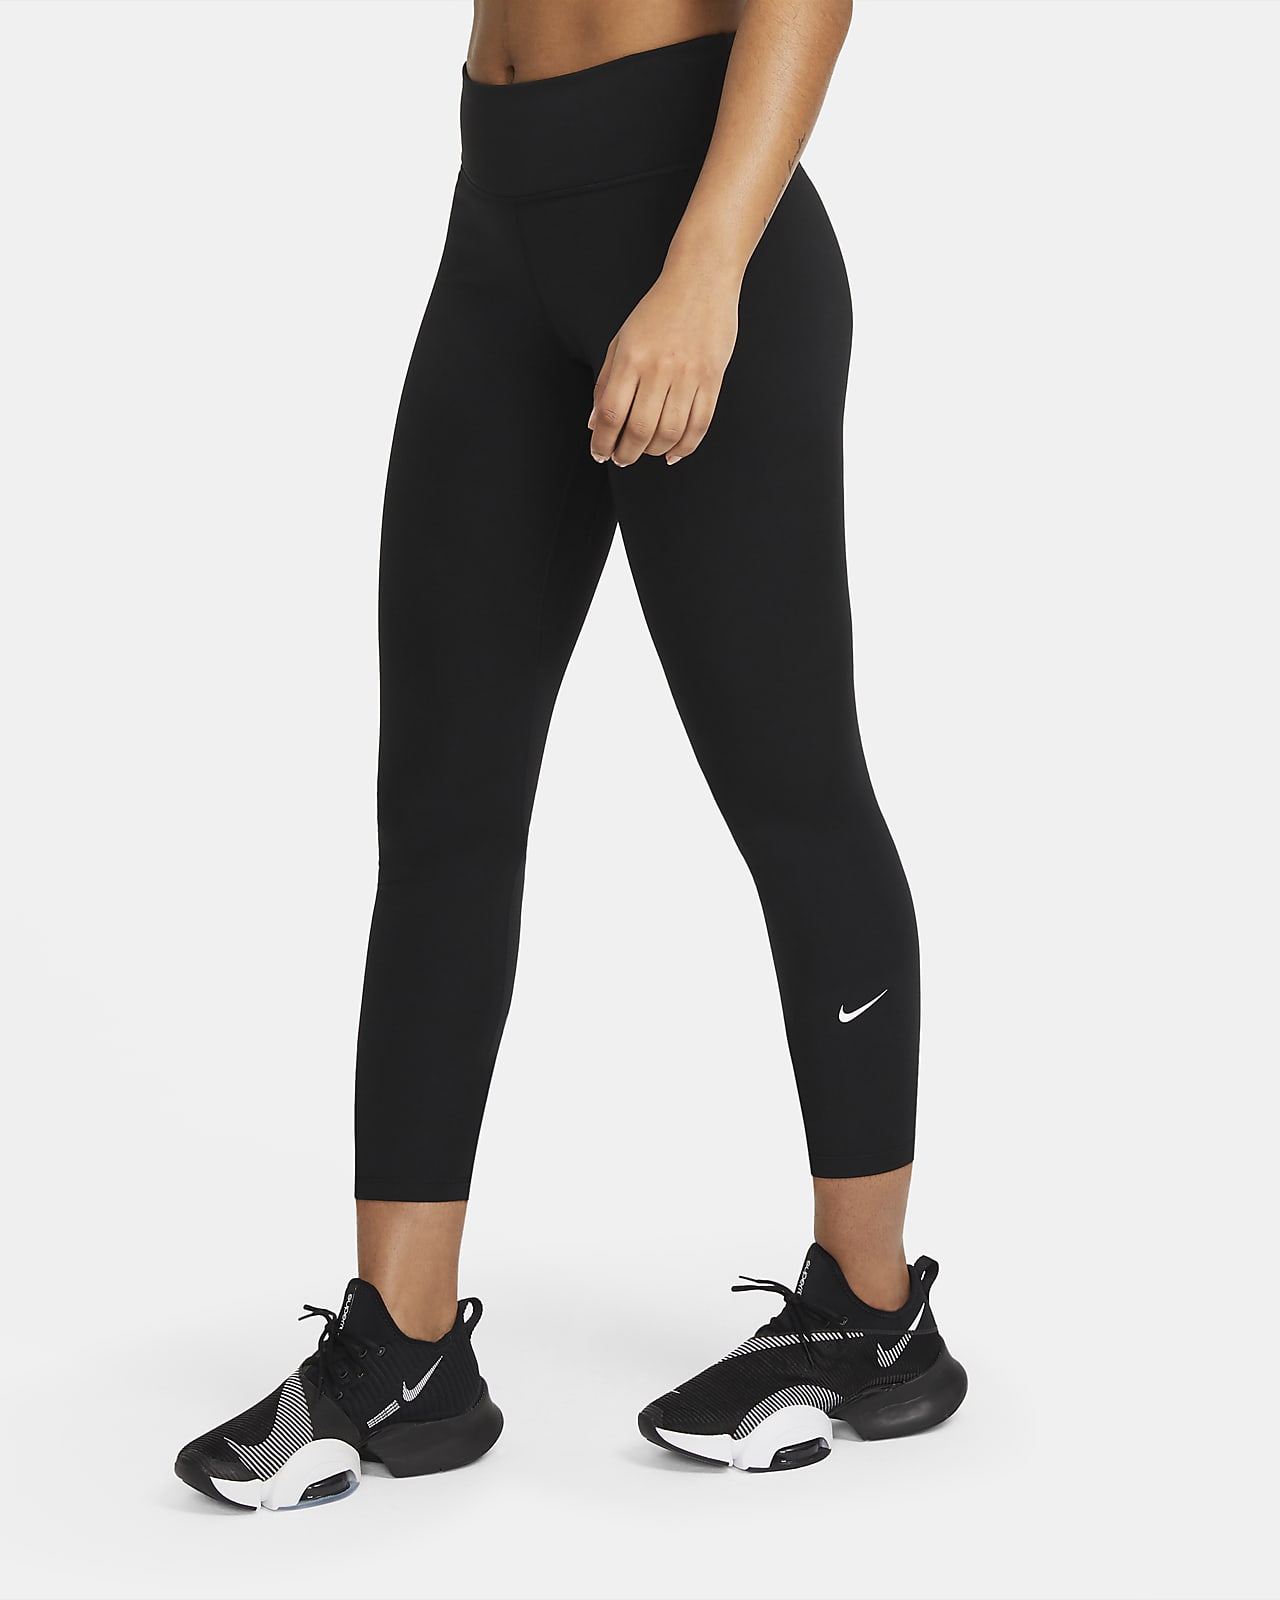 Nike One Normal Belli Bilek Üstü Kadın Taytı